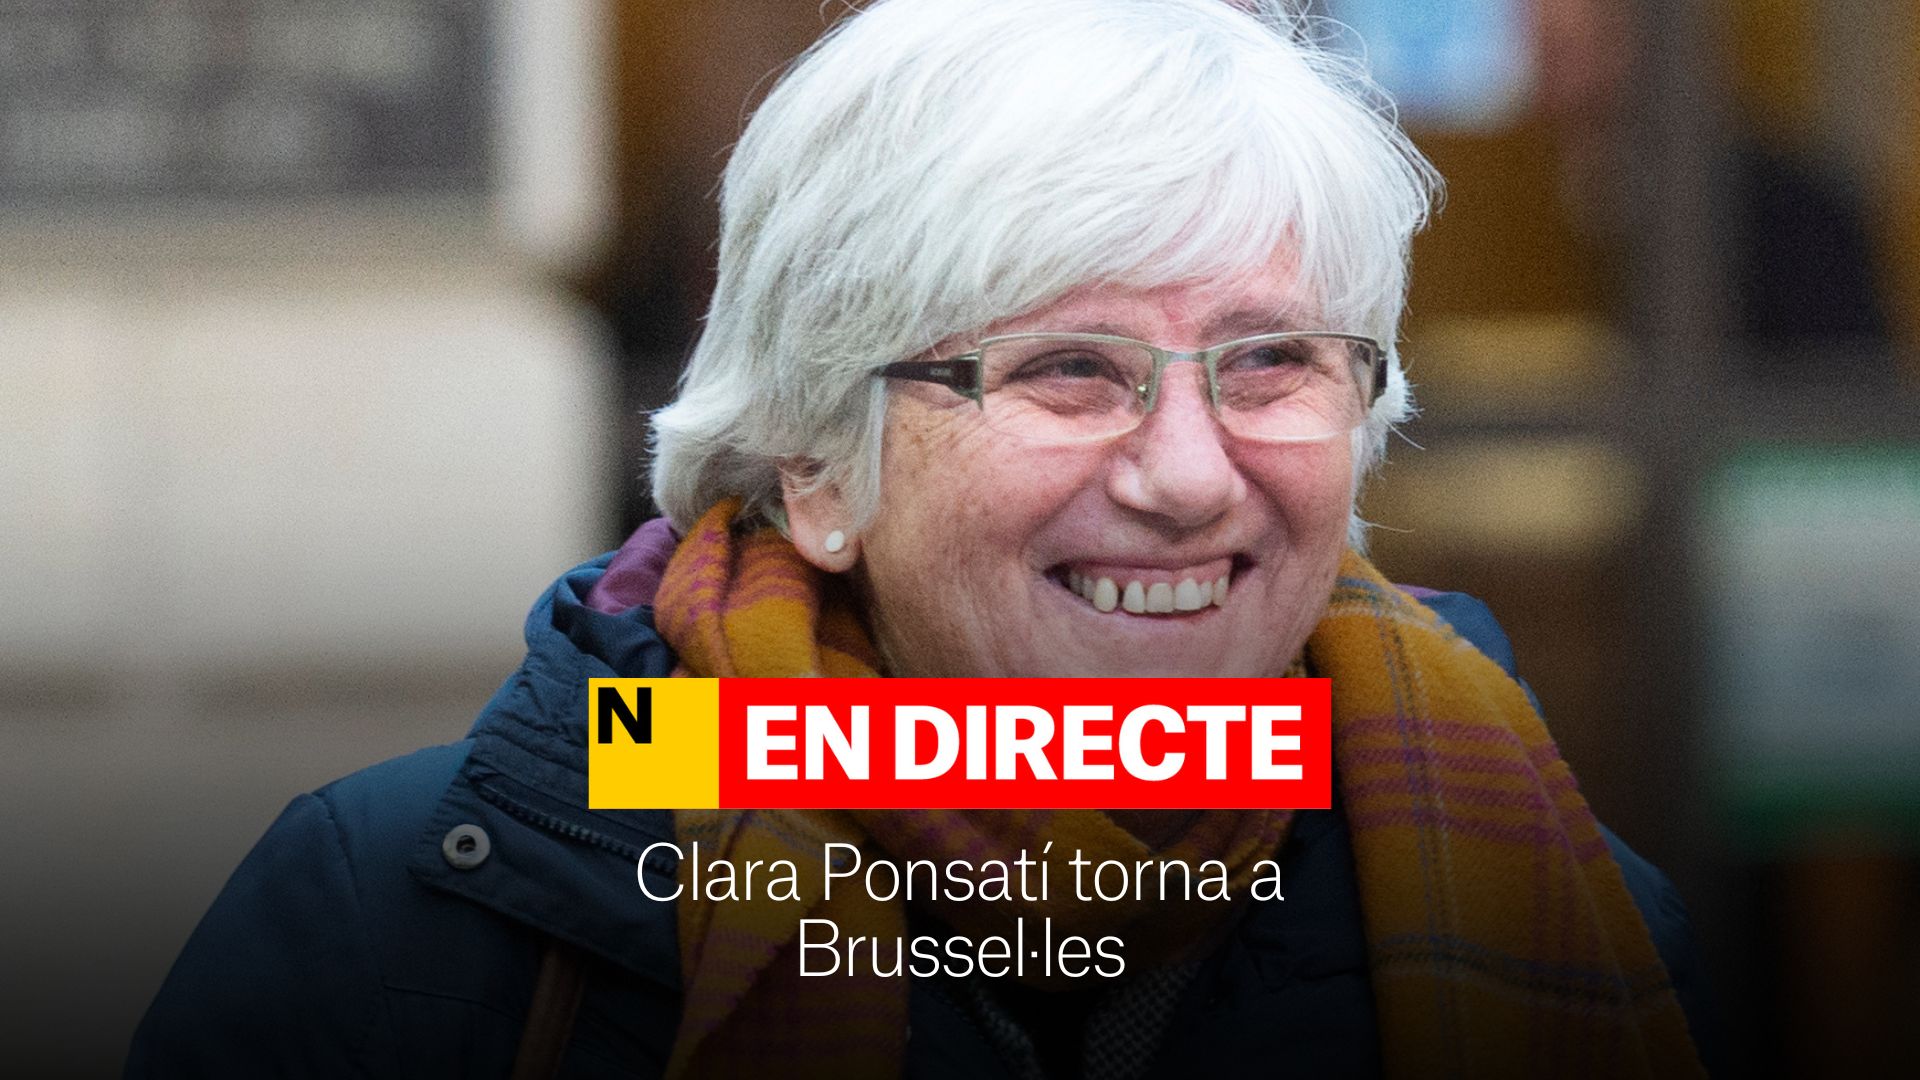 Clara Ponsatí torna a Brussel·les després de la detenció a Barcelona, DIRECTE